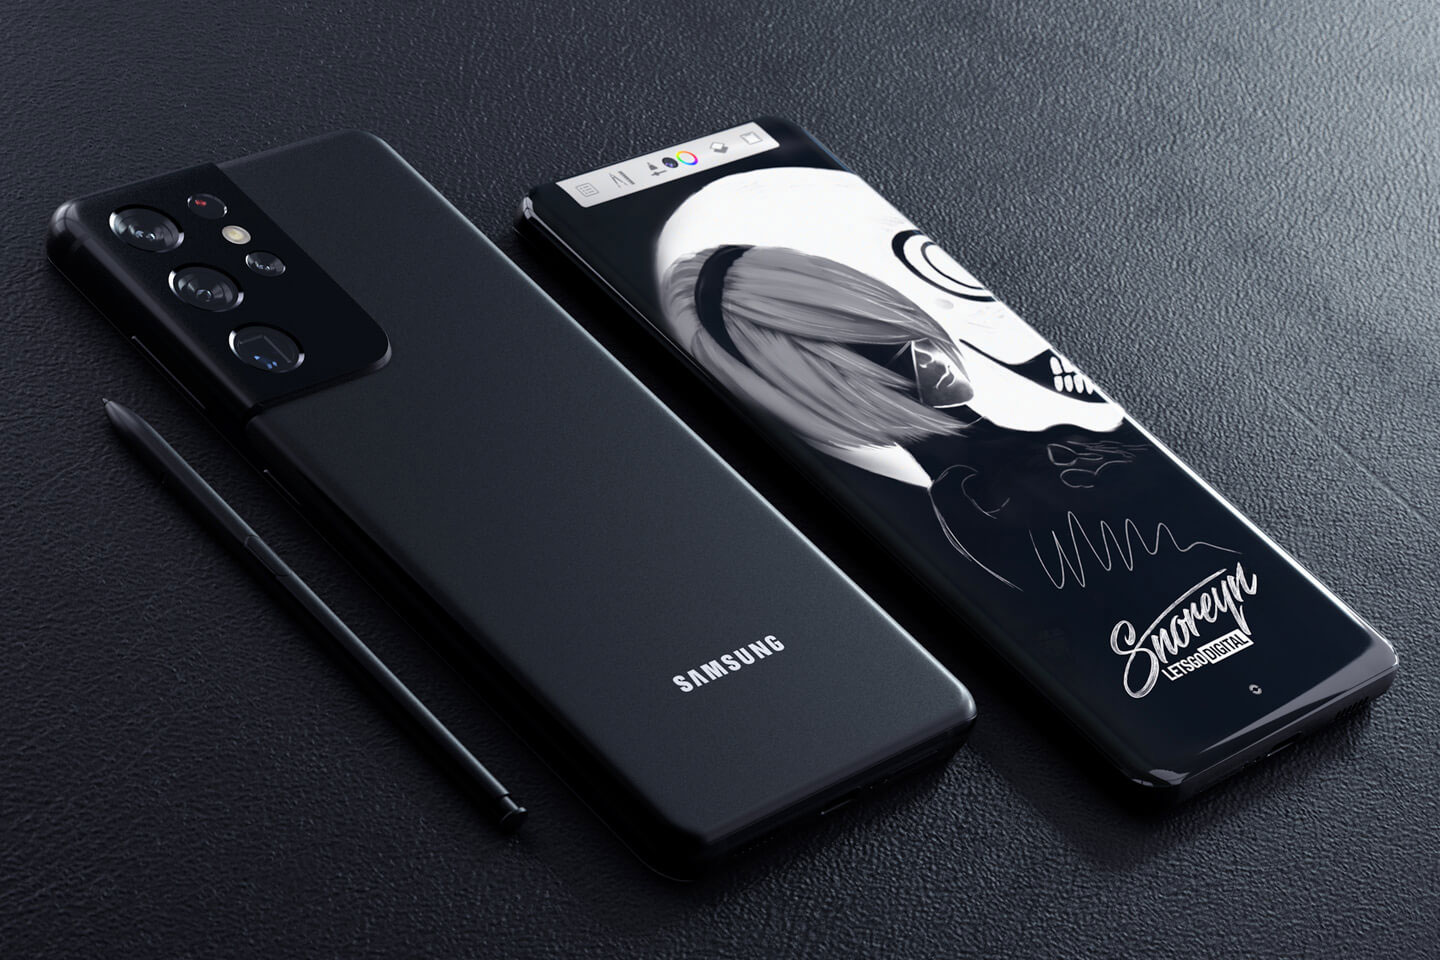 à¸‹à¸±à¸¡à¸‹à¸¸à¸‡ à¸¢à¸·à¸™à¸¢à¸±à¸™ Samsung Galaxy S21 Ultra à¸£à¸­à¸‡à¸£à¸±à¸šà¸›à¸²à¸à¸à¸² S Pen à¹à¸™à¹ˆà¸™à¸­à¸™